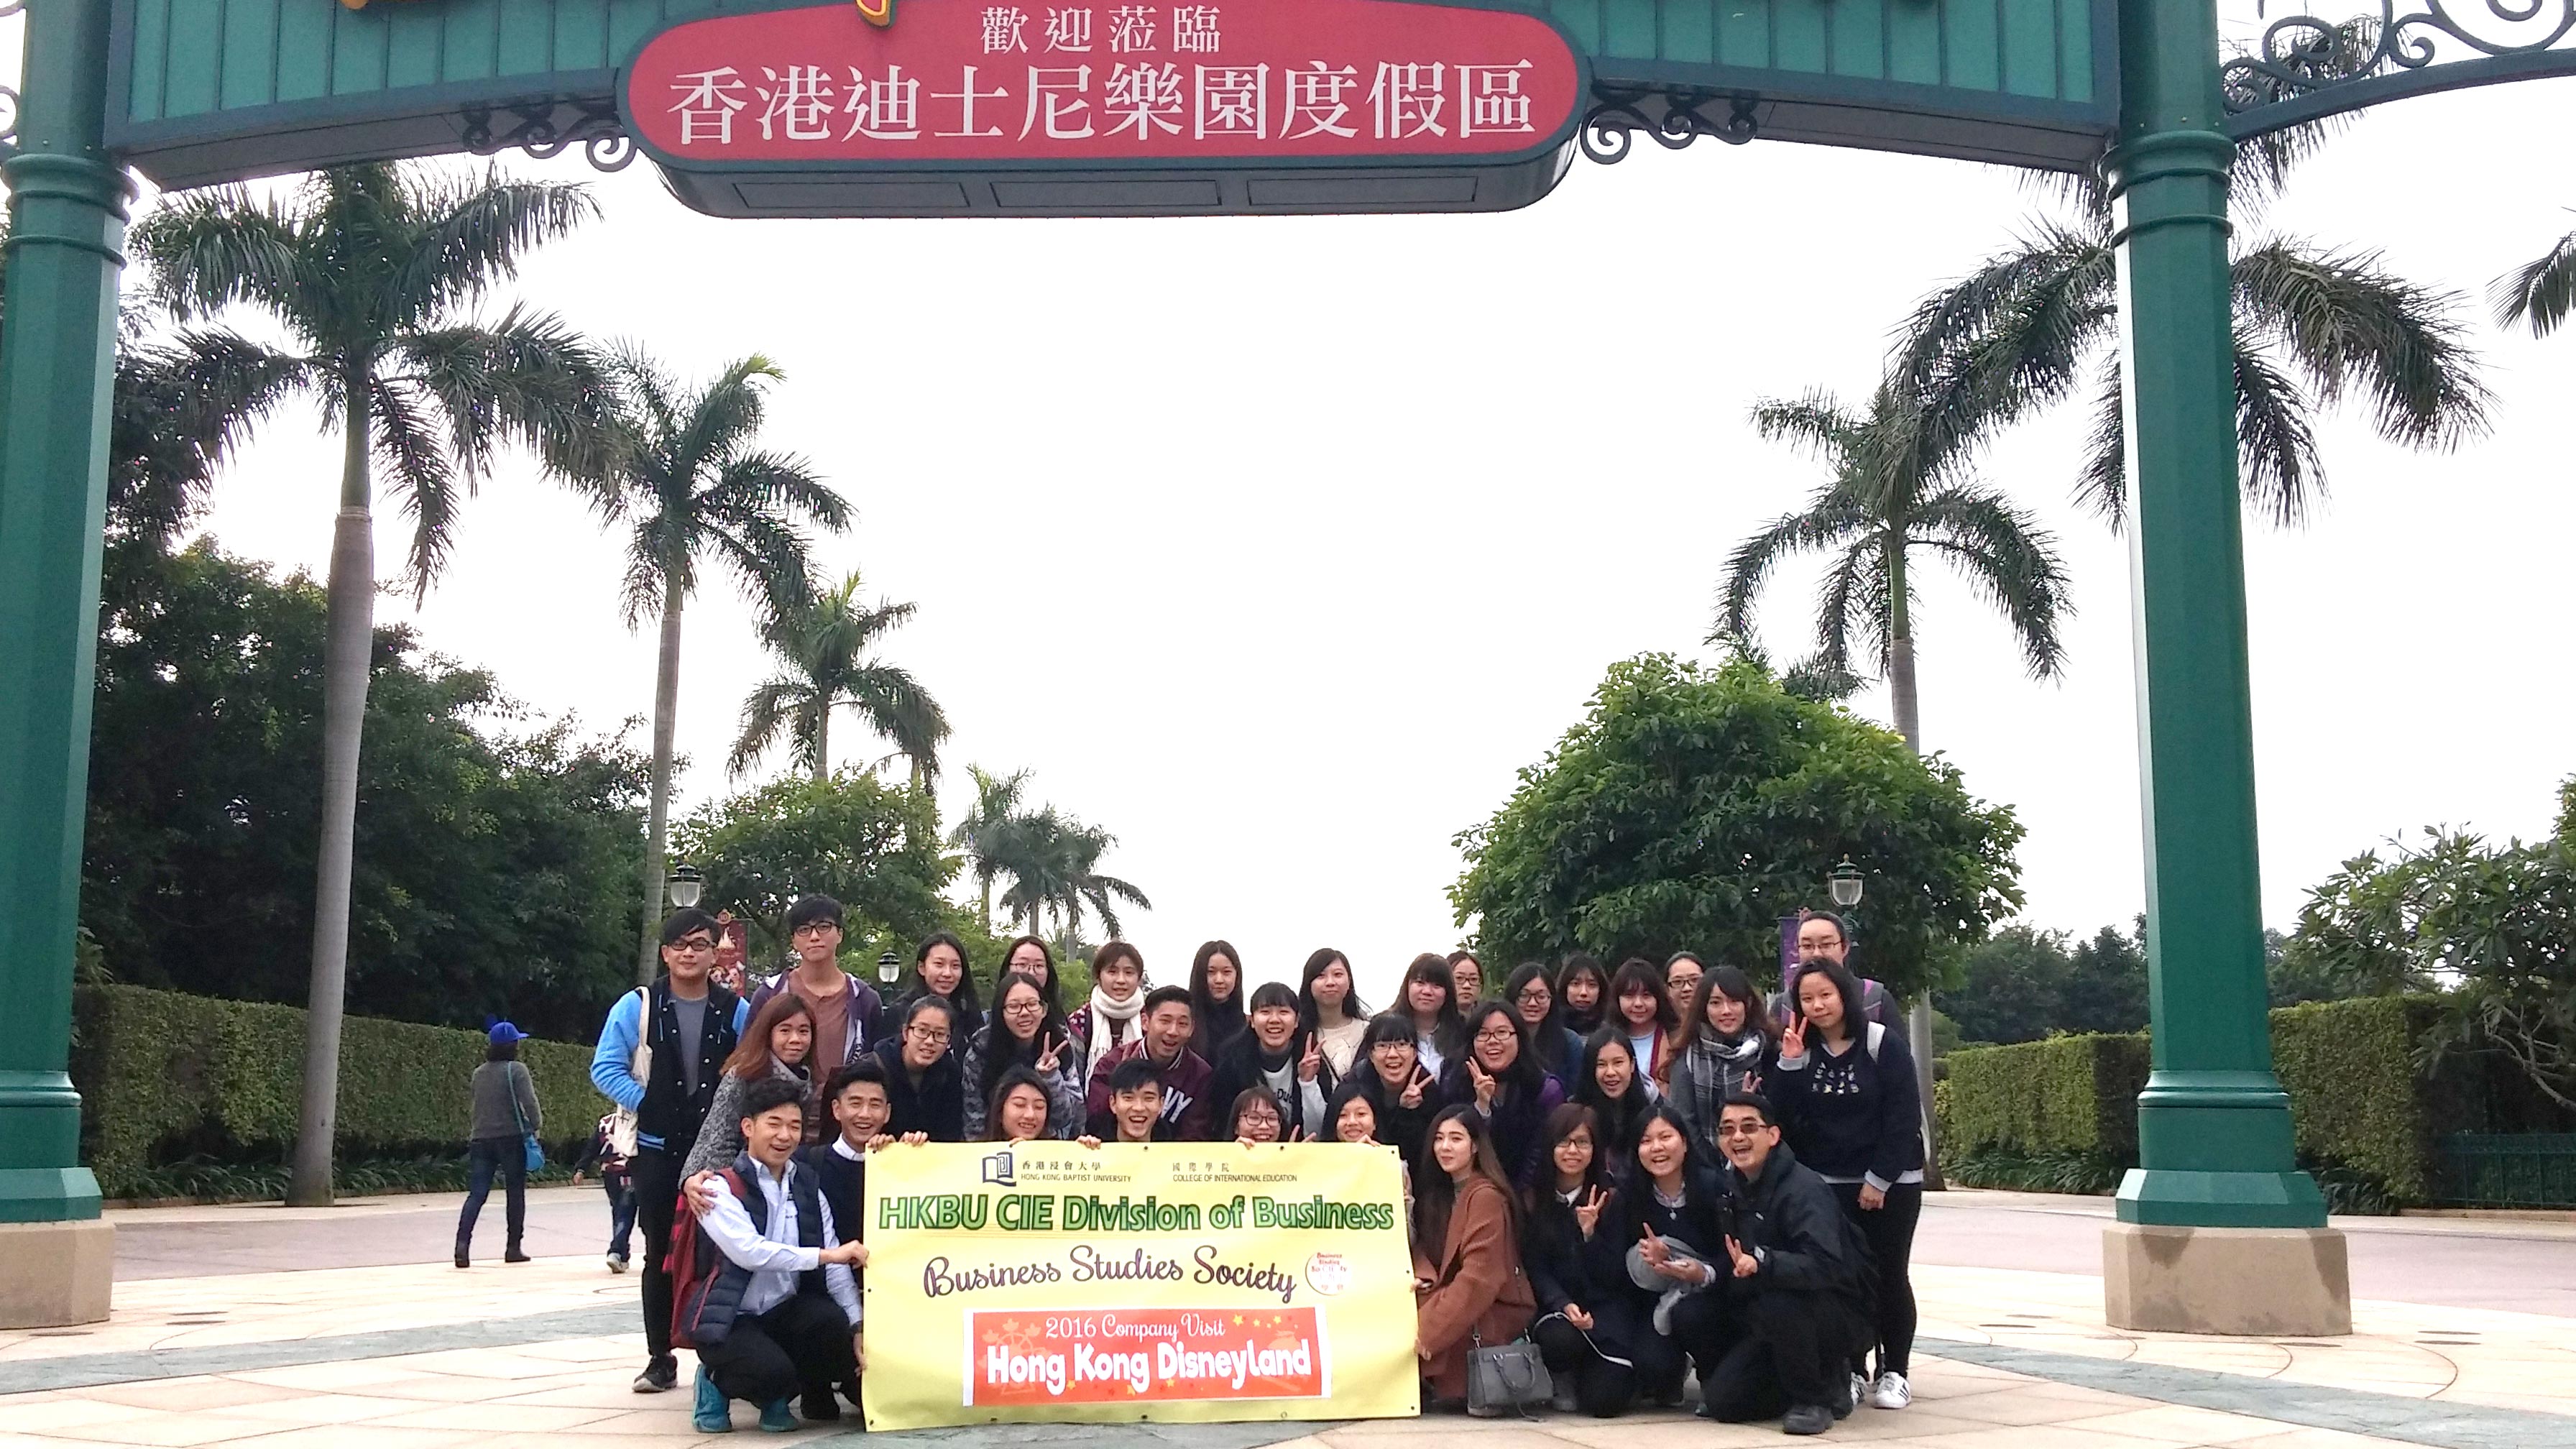 國際學院商學會參觀香港迪士尼樂園學習人力資源管理